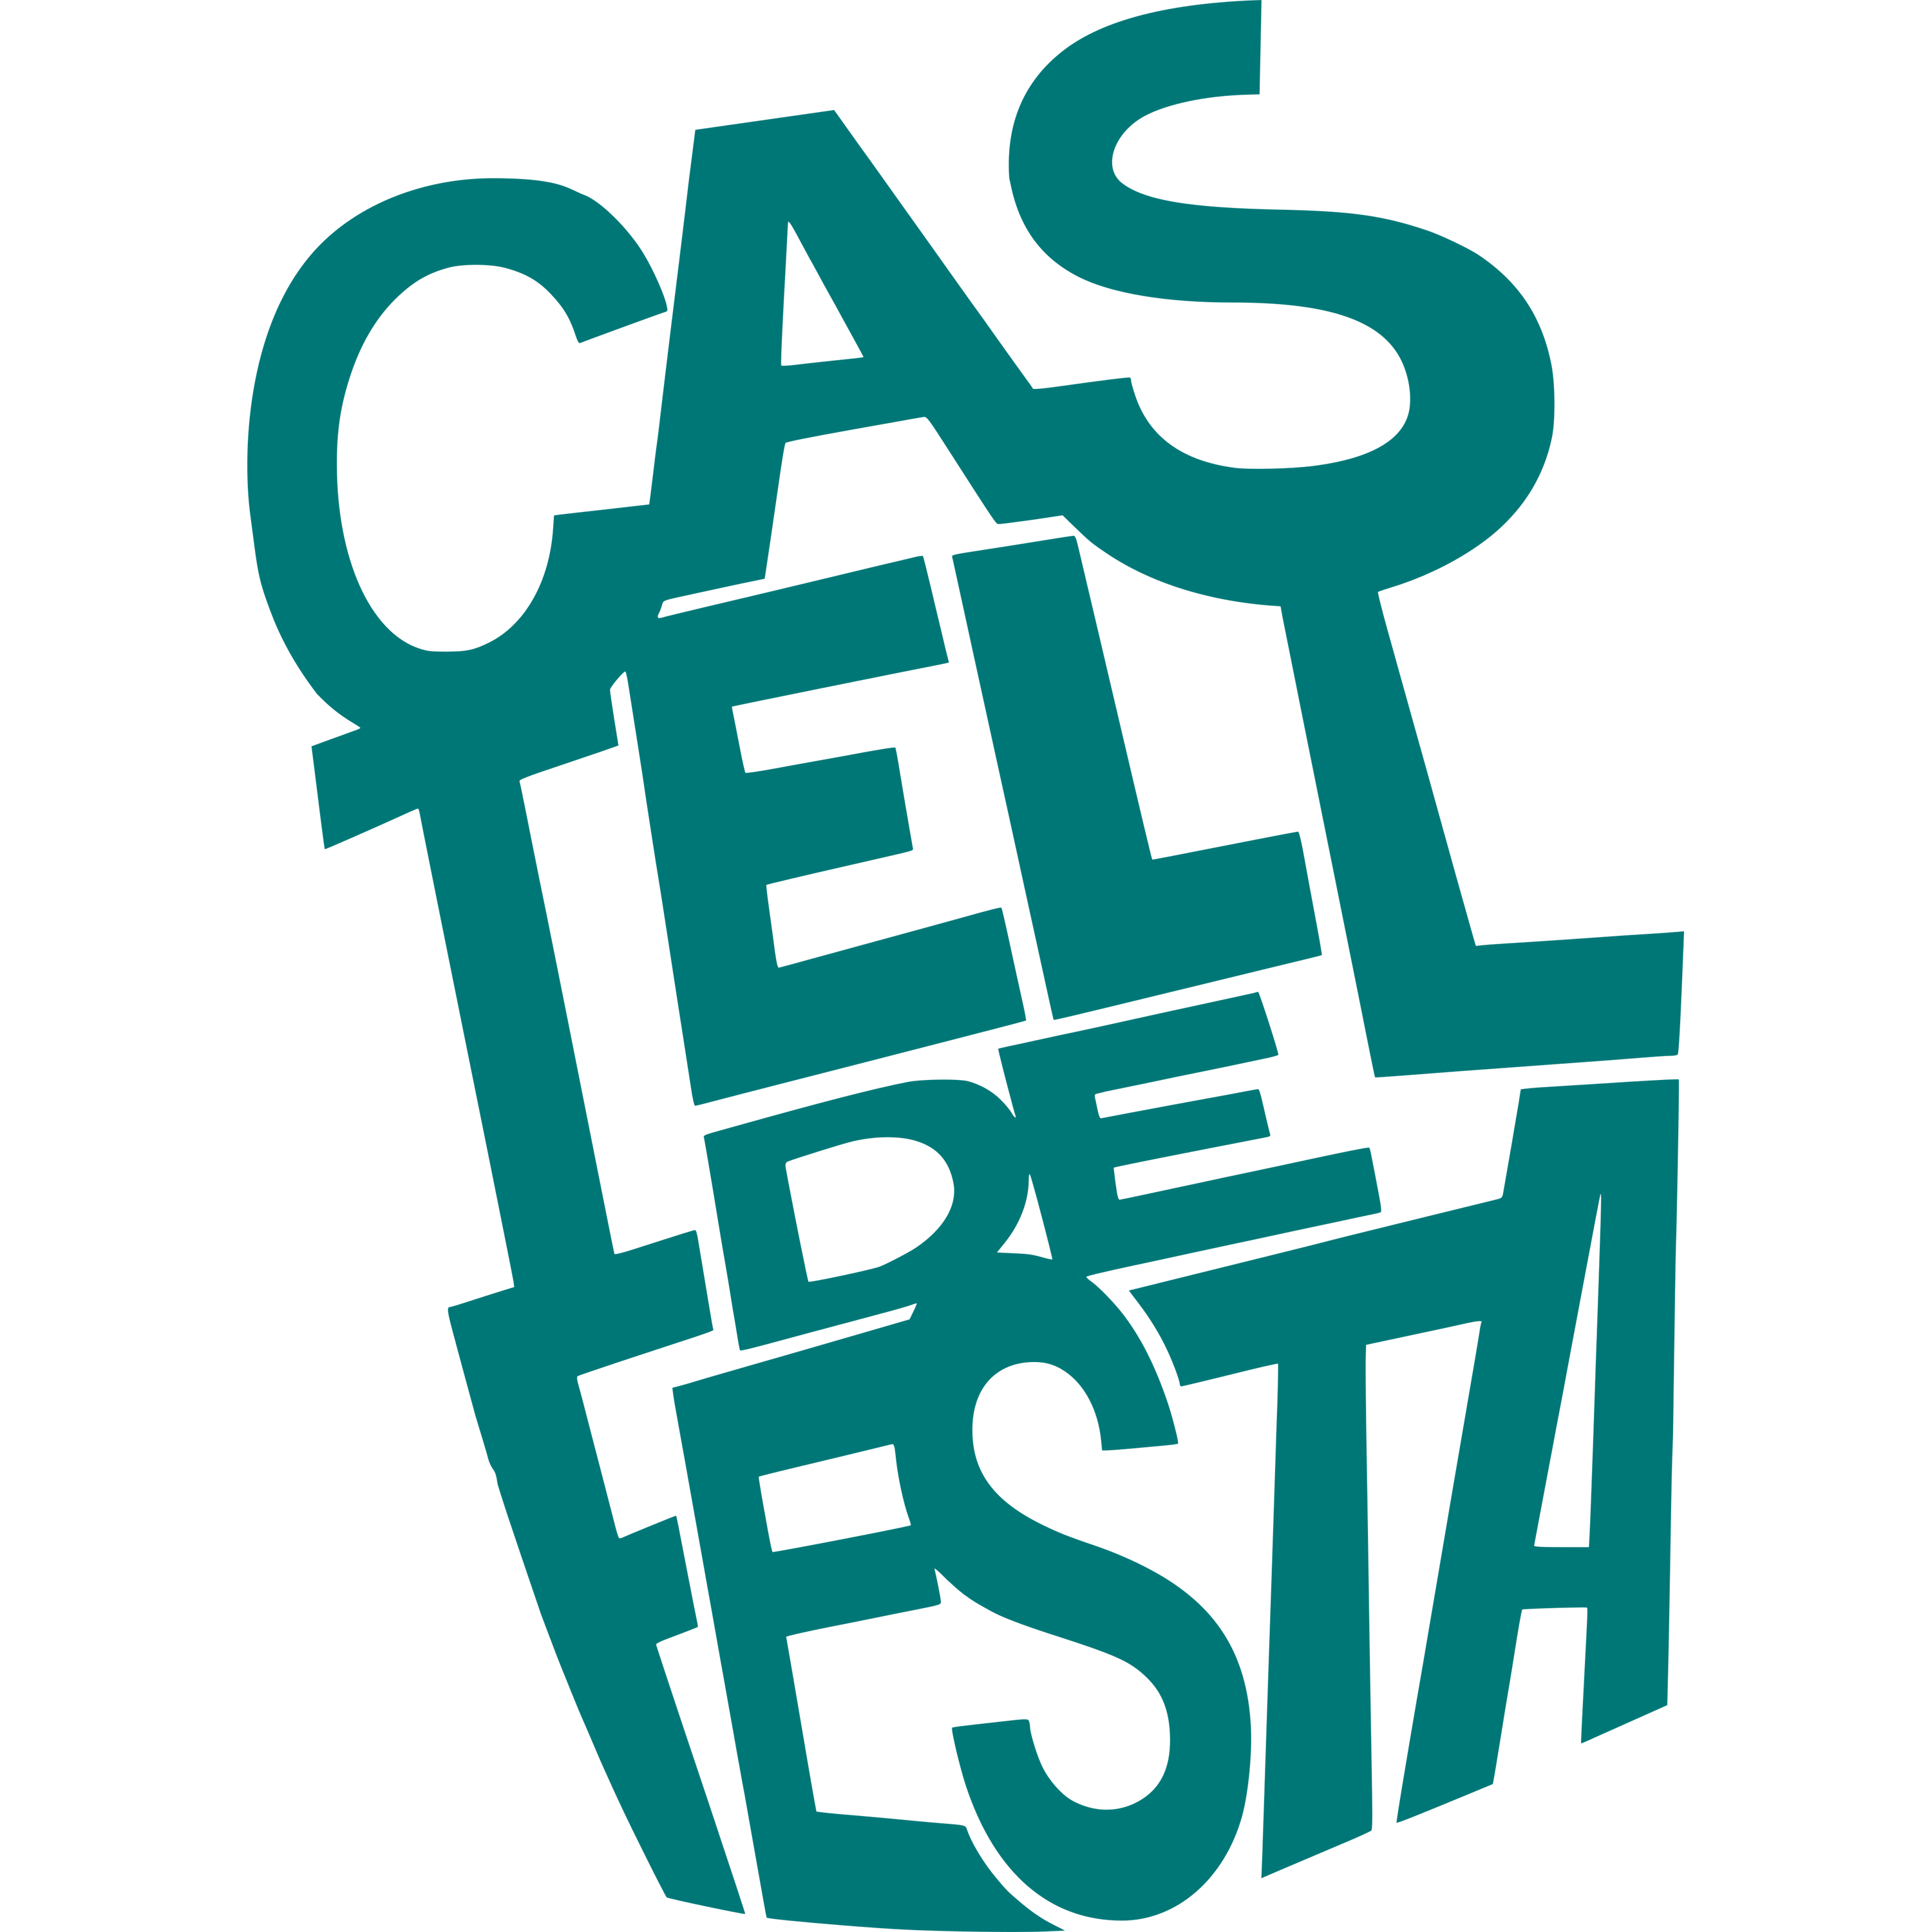 Castelldefesta Logo Transparent Picture